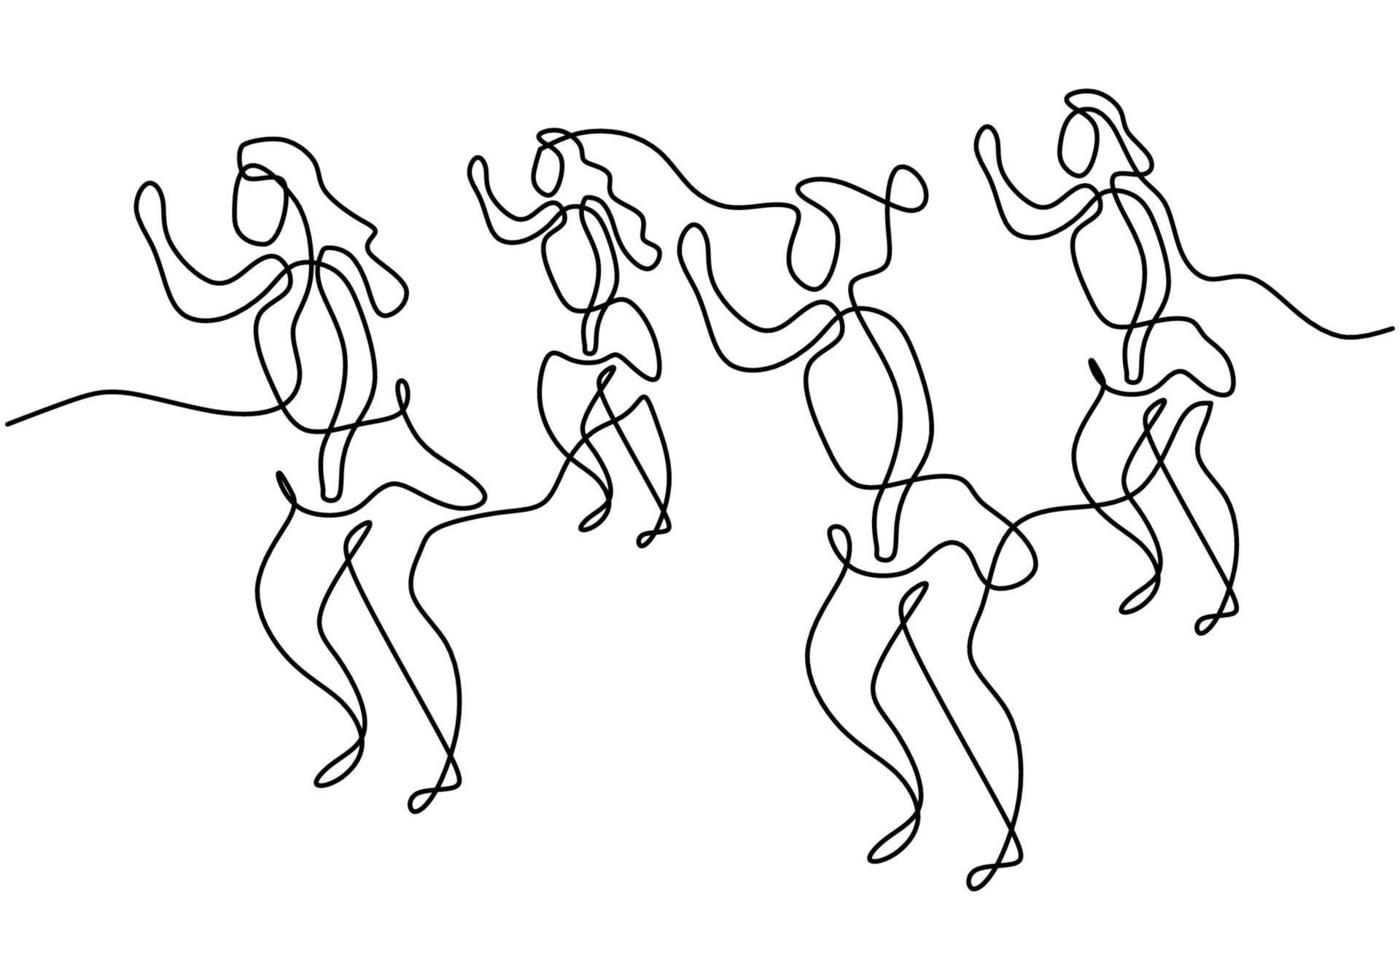 kontinuierliche Strichzeichnung einer Gruppe von Mädchen im Zumba-Tanz. vier energetische junge Frauen üben Tanz isoliert auf weißem Hintergrund. Tanzsport und gesundes Lifestyle-Konzept. Vektorillustration vektor